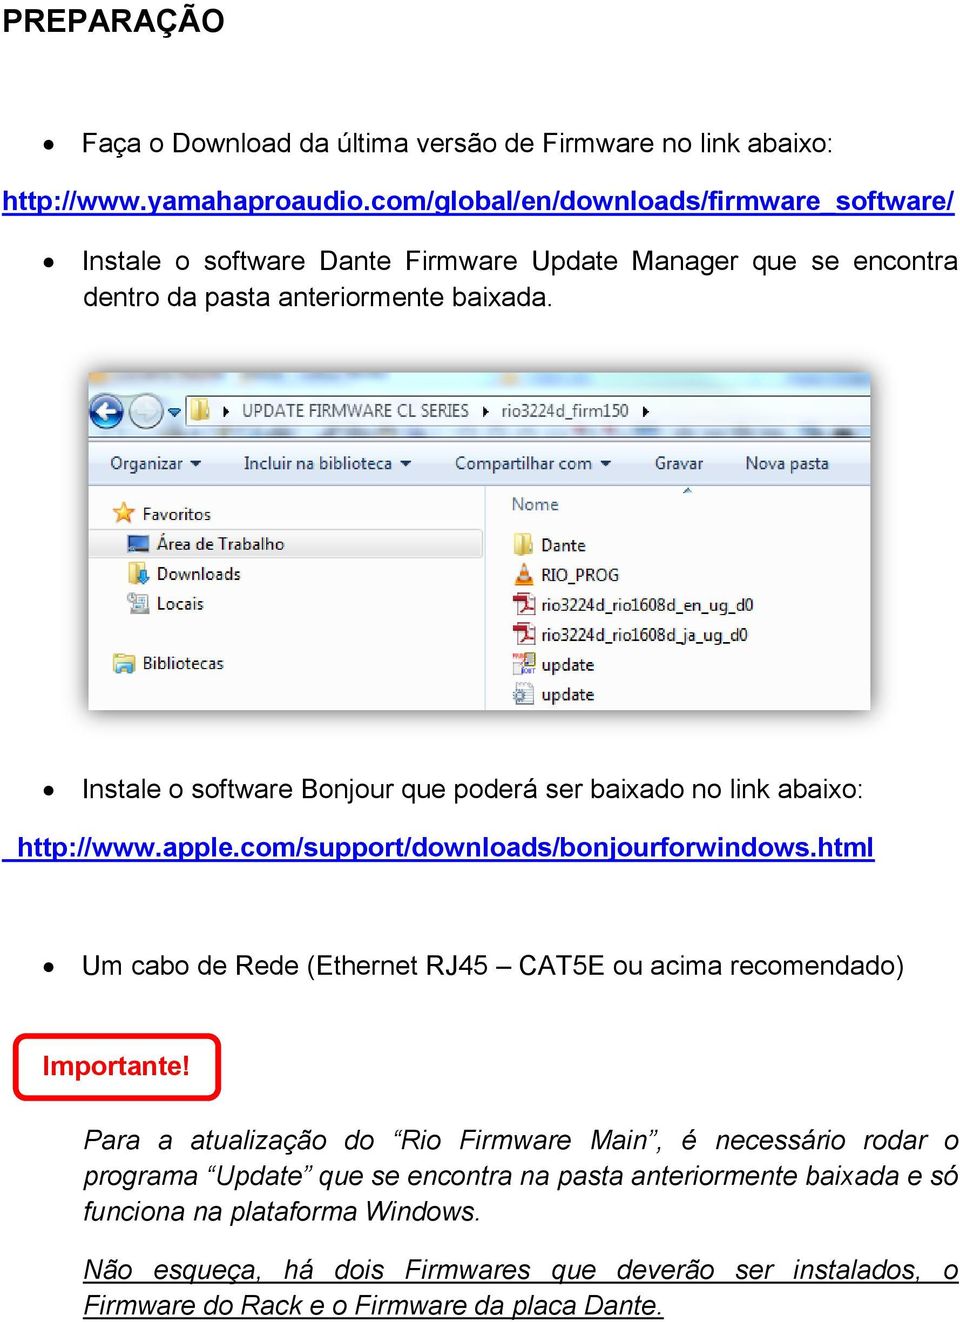 Instale o software Bonjour que poderá ser baixado no link abaixo: http://www.apple.com/support/downloads/bonjourforwindows.